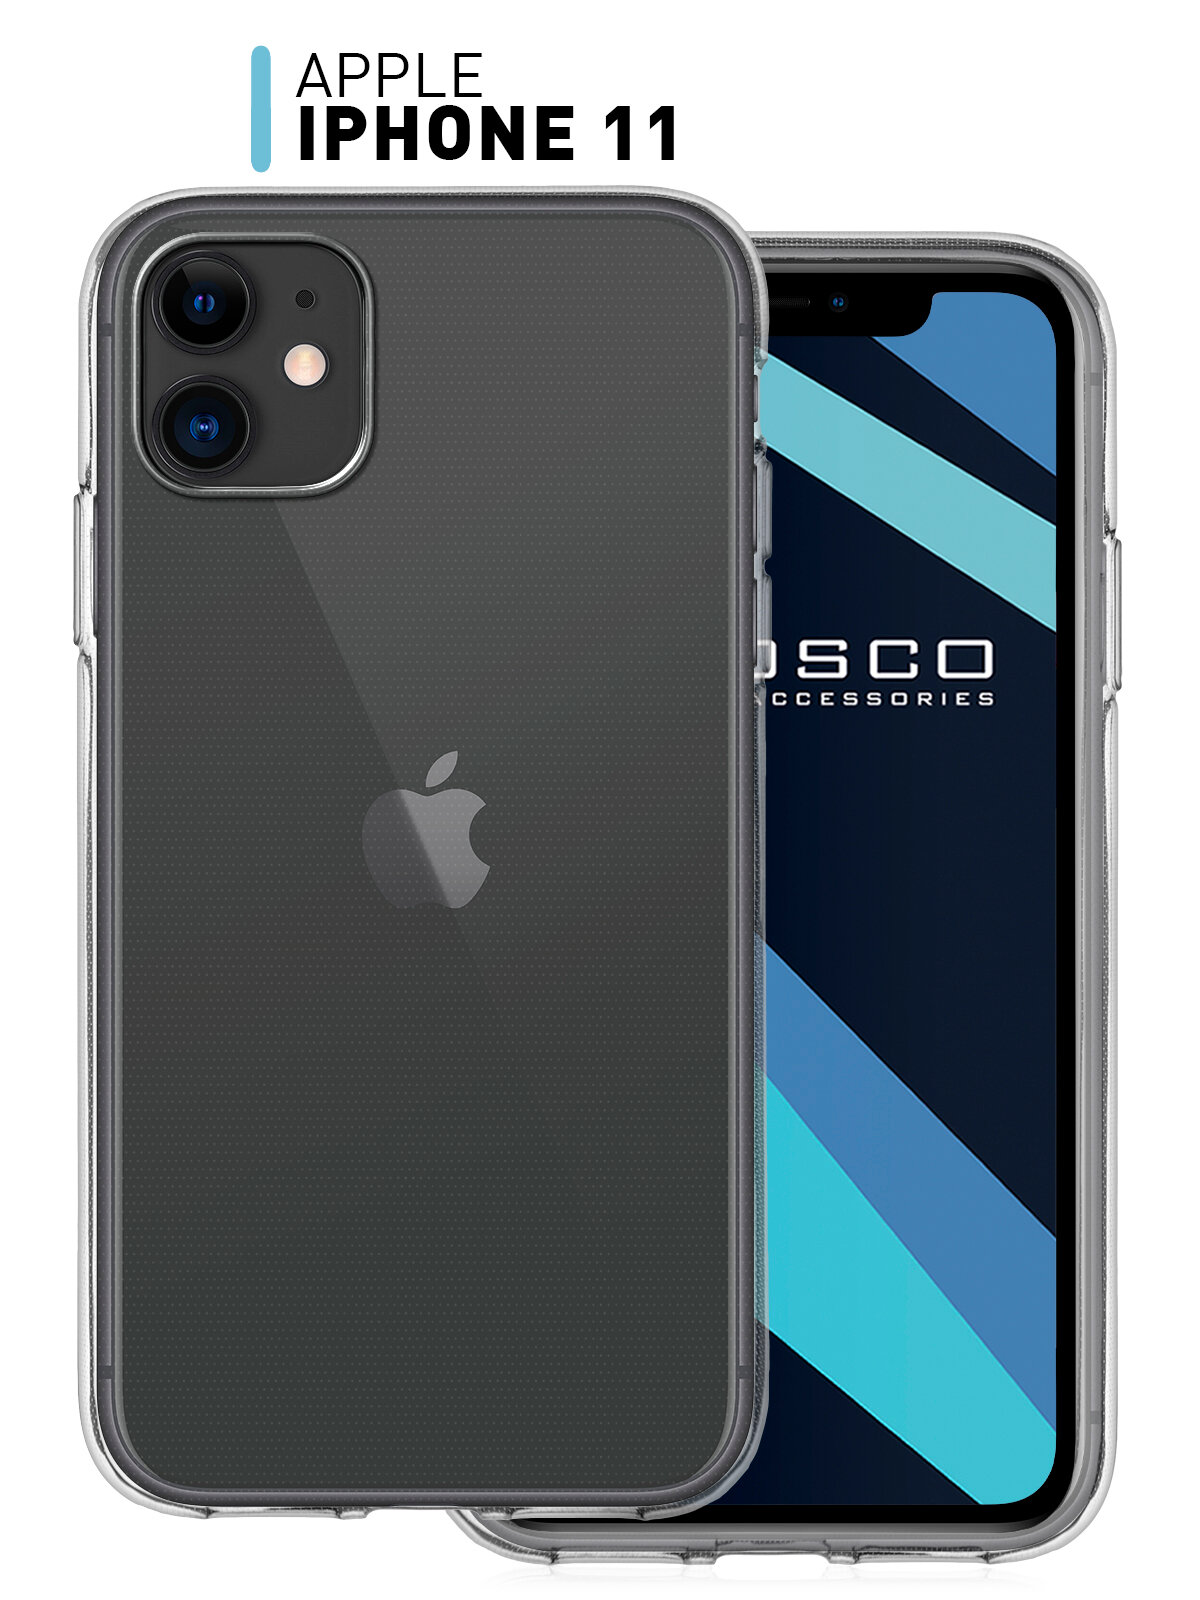 Прозрачный силиконовый чехол ROSCO на Apple iPhone 11 (Эпл Айфон 11) с бортиком для защиты дисплея и блока камер гибкий